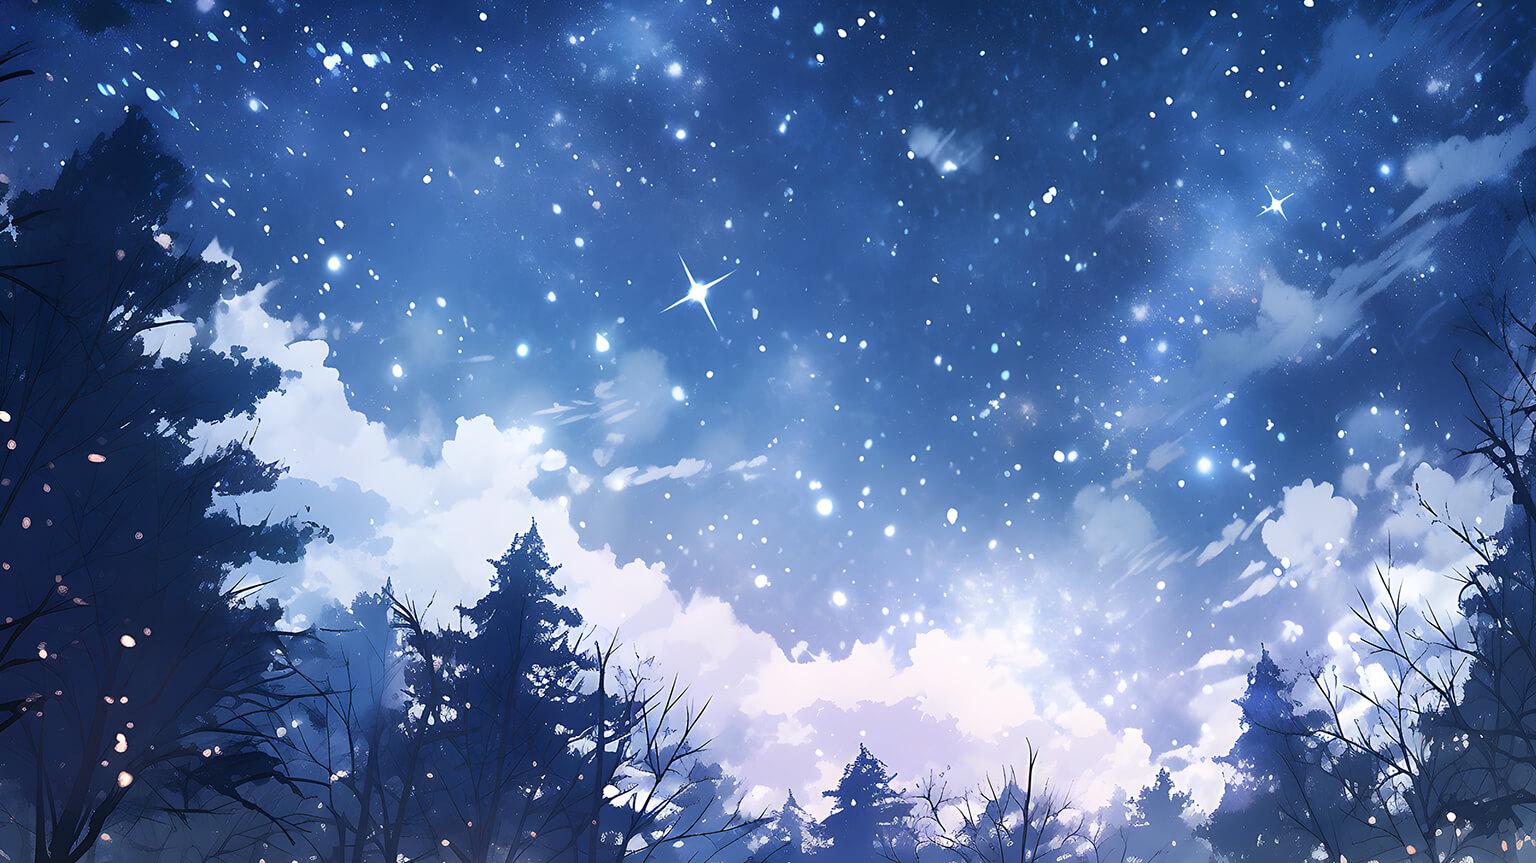 Winter Sky Full Of Stars Desktop Wallpaper 4k